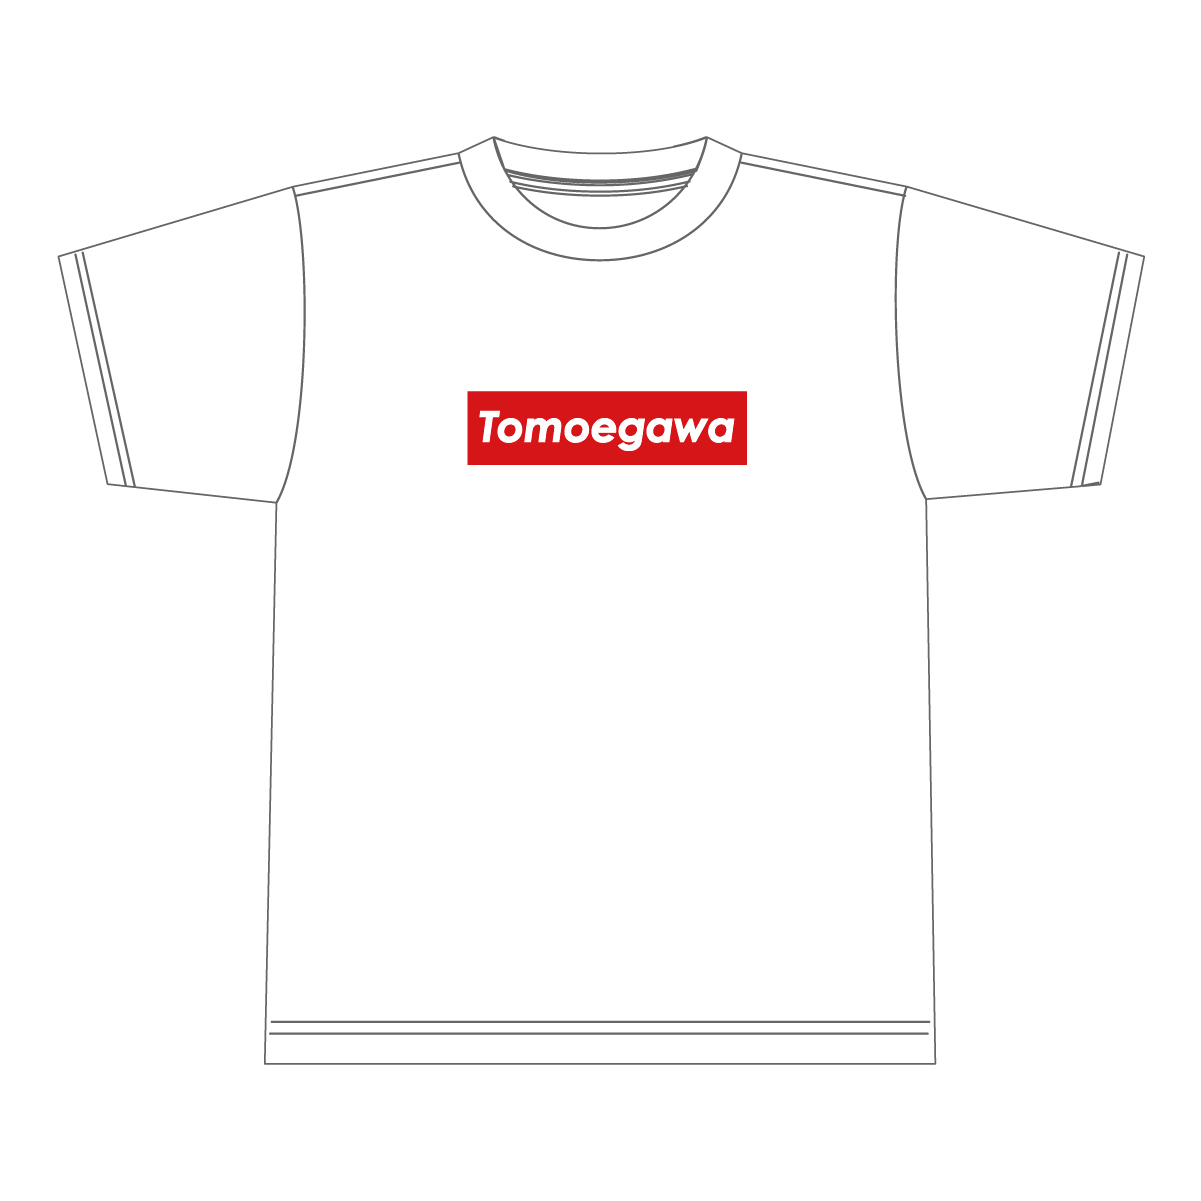 どこかで見たことある...? Tomoegawa Tシャツ パクリーム ホワイト 白 ワンポイント 一流の品質 ロゴ 清水 静岡市 清水区 お土産 静岡県 大好評です 巴川 静岡 ご当地